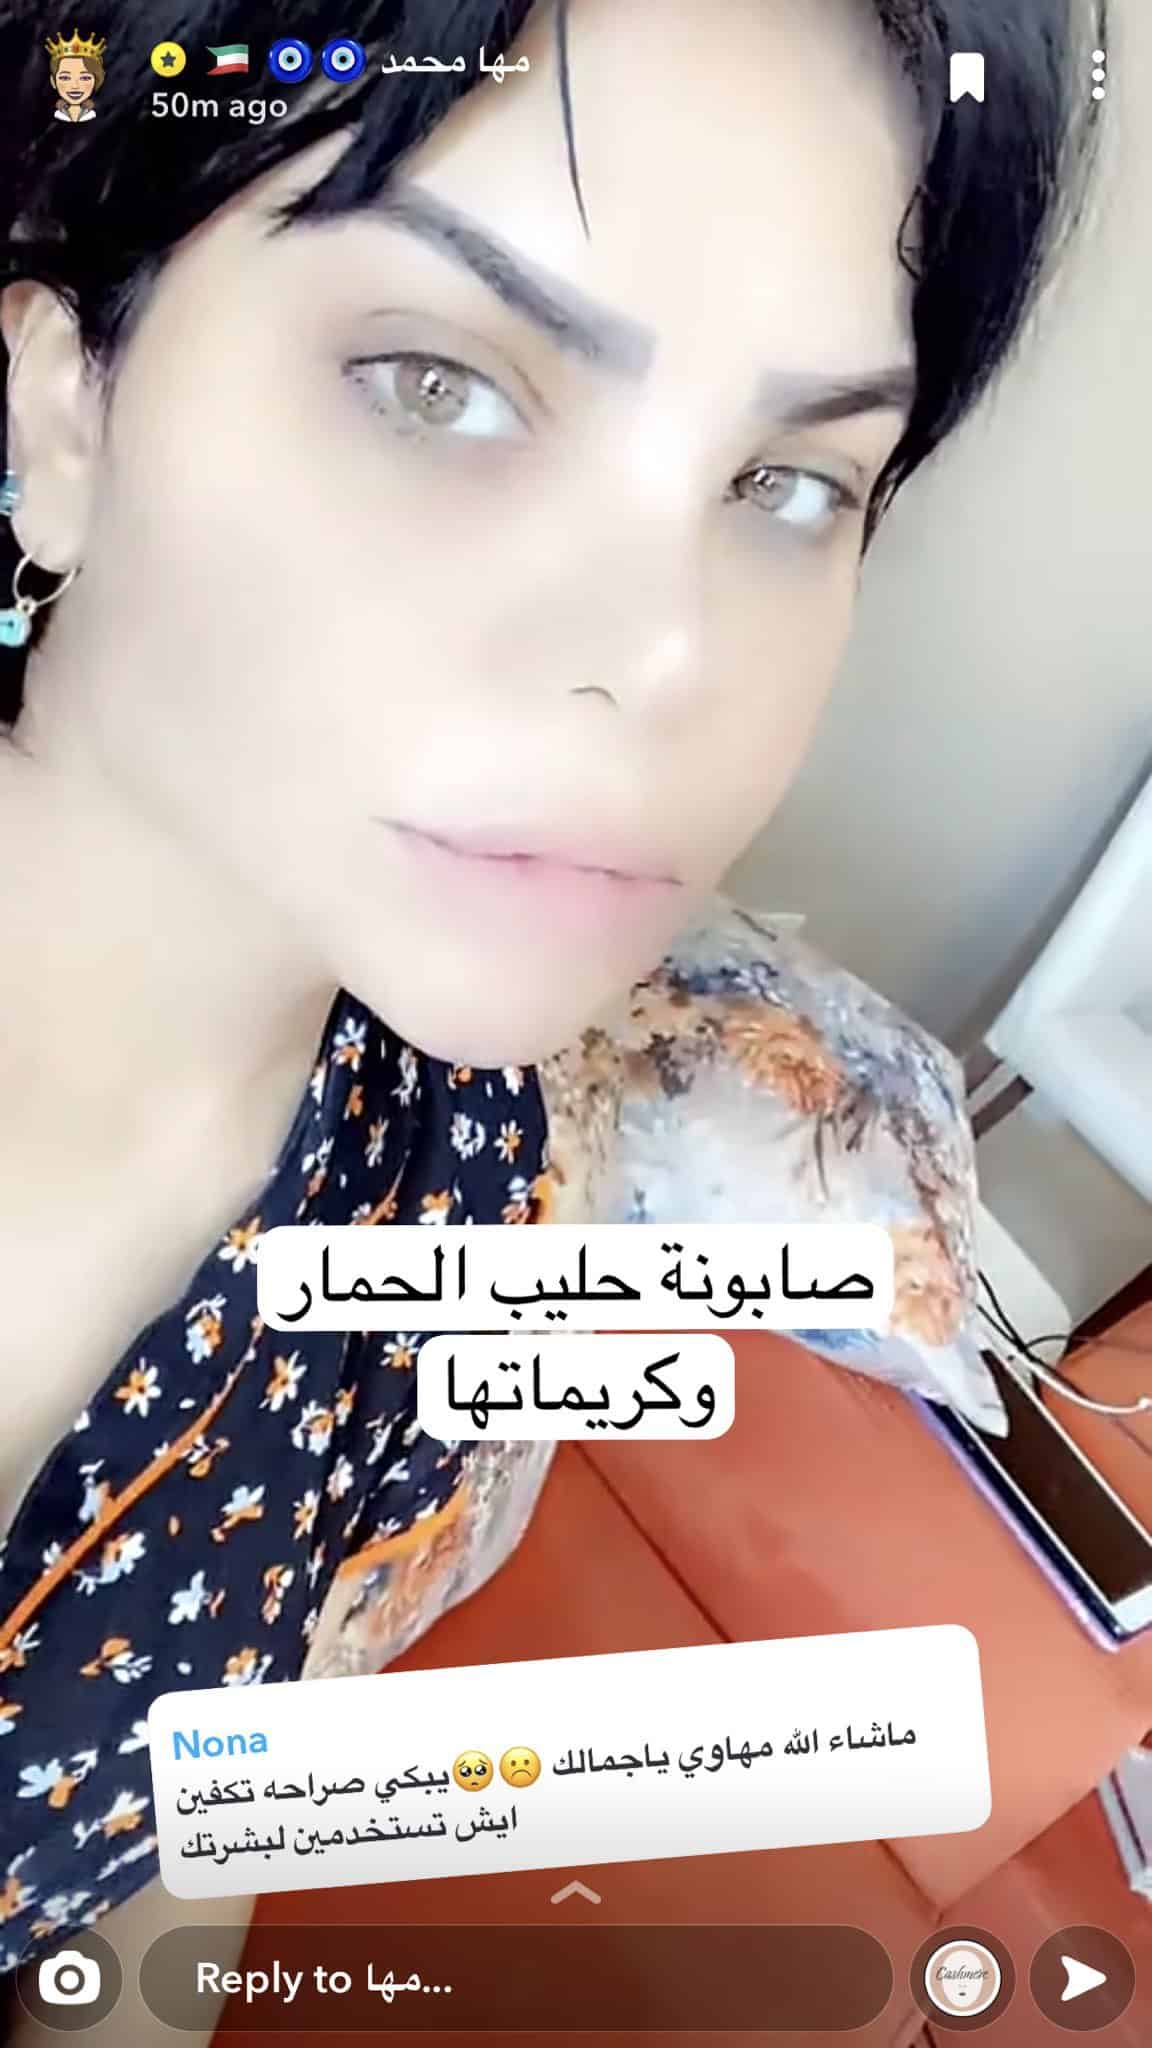 الممثلة مها محمد تنصح متابعه بصابون حليب الحمار للبشرة المشرقة